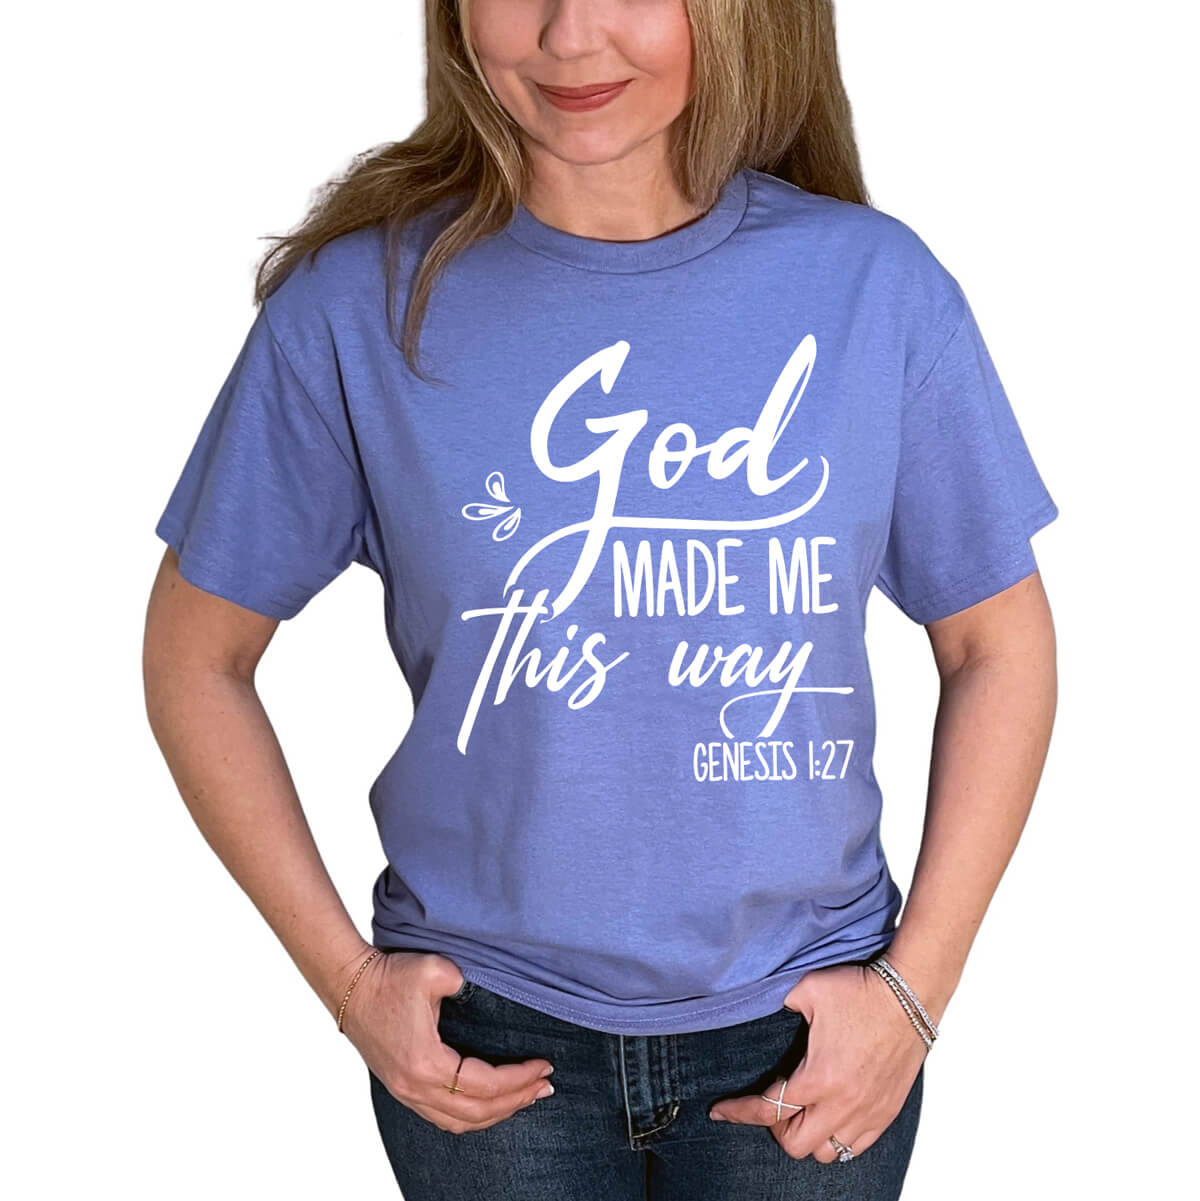 God Made Me This Way T-Shirt